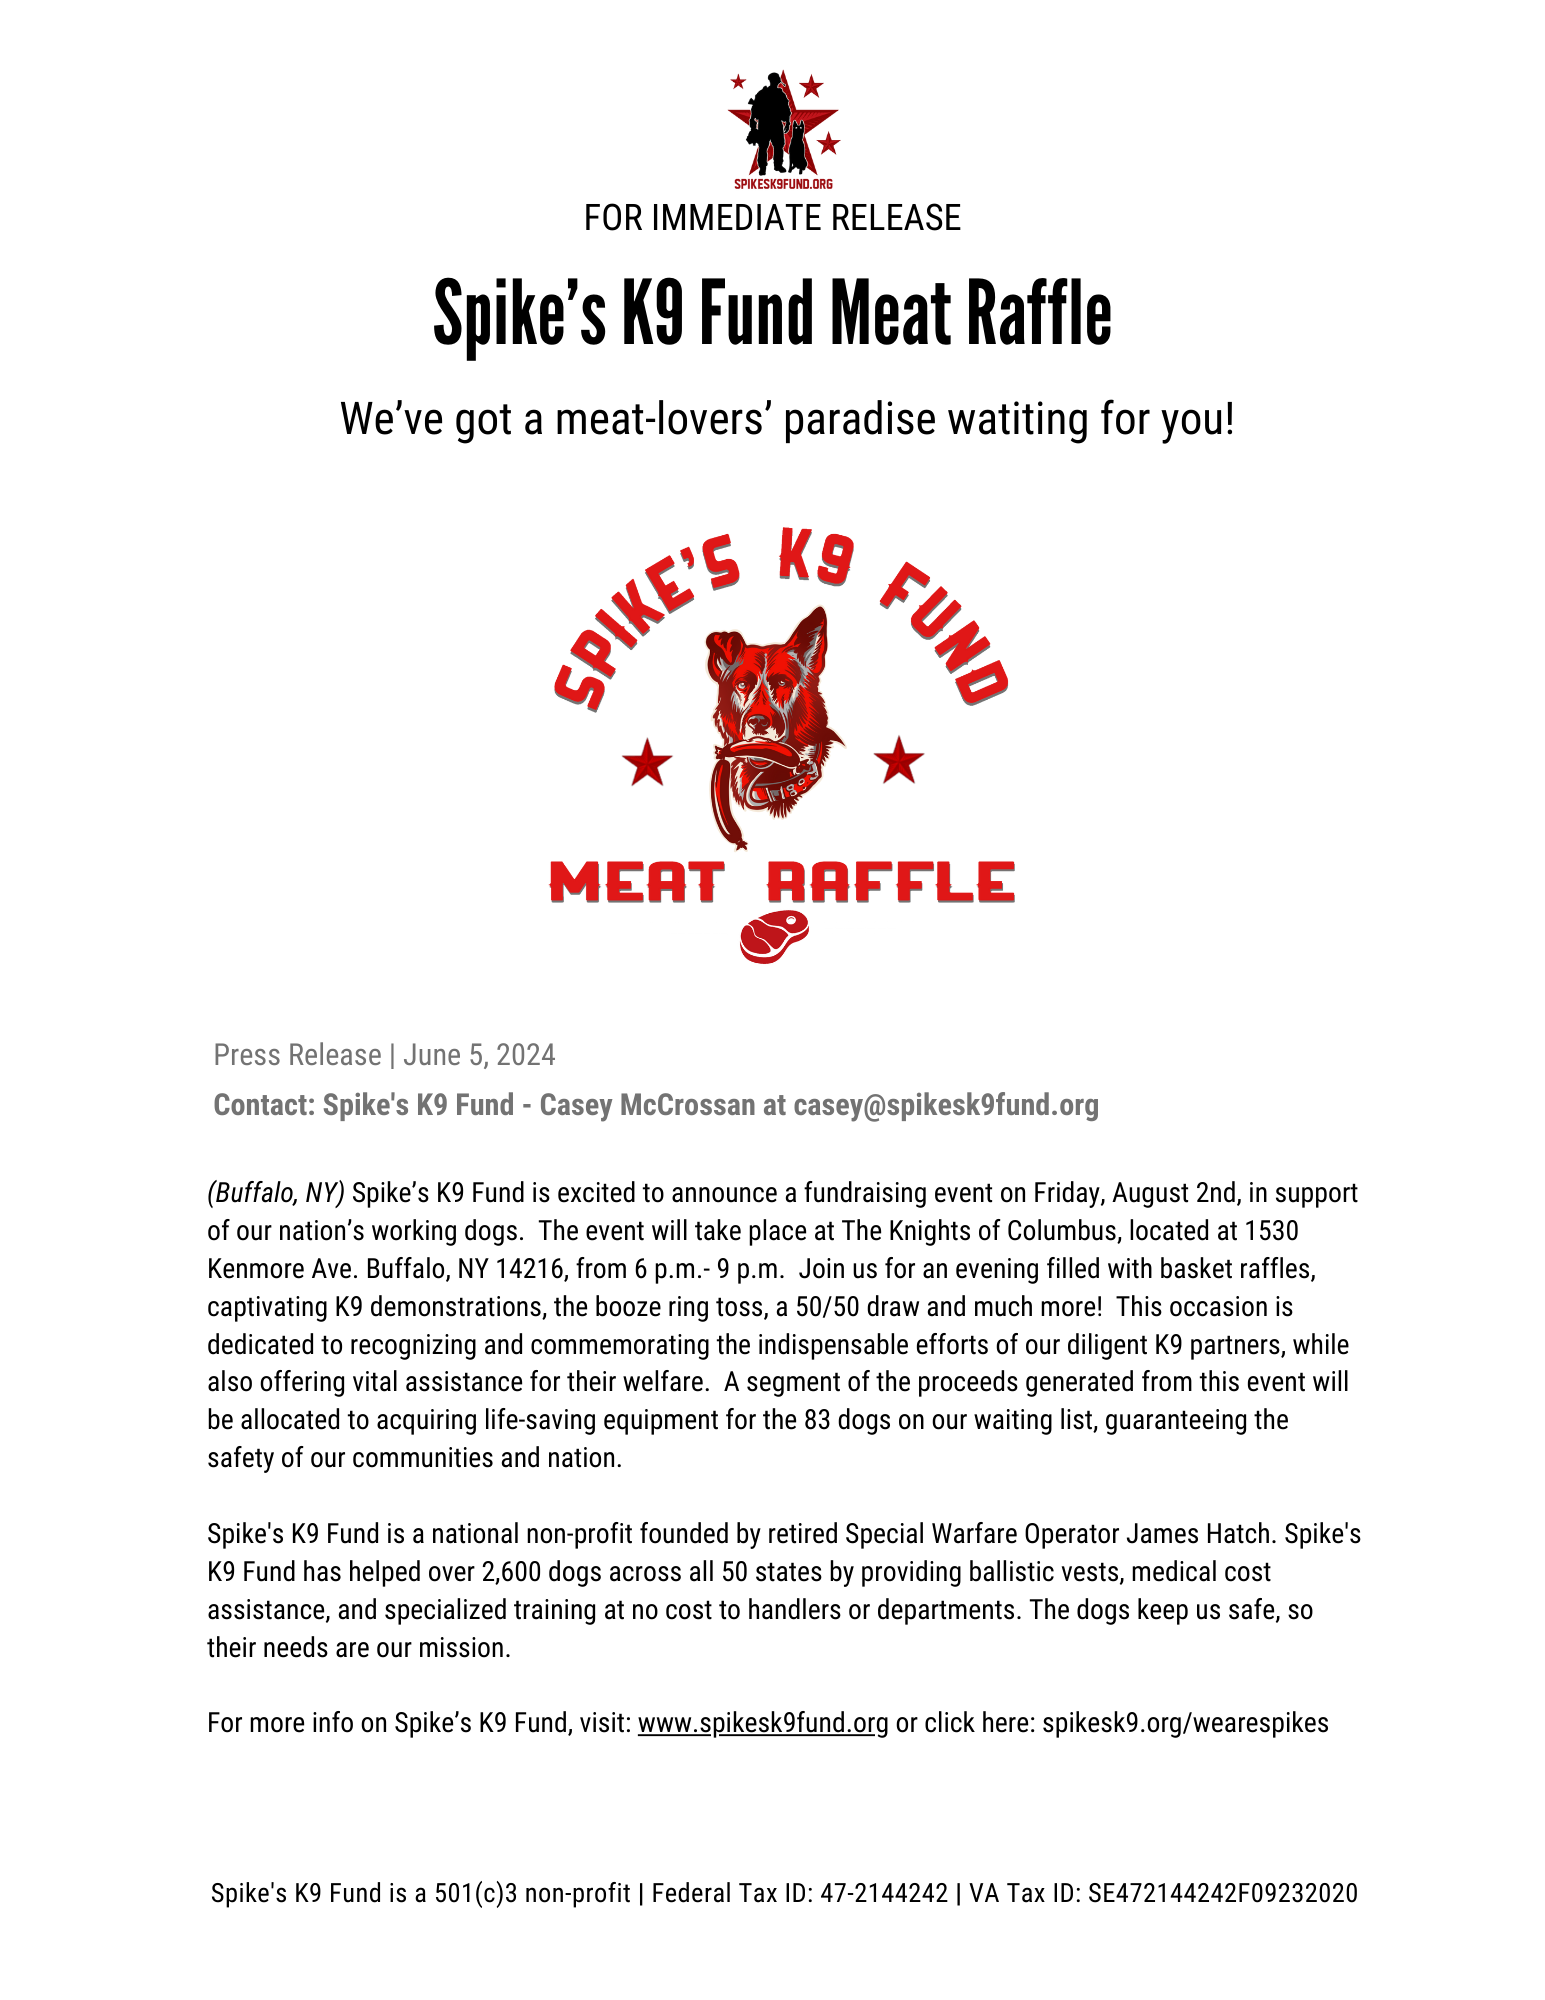 Spike's K9 Fund Meat Raffle